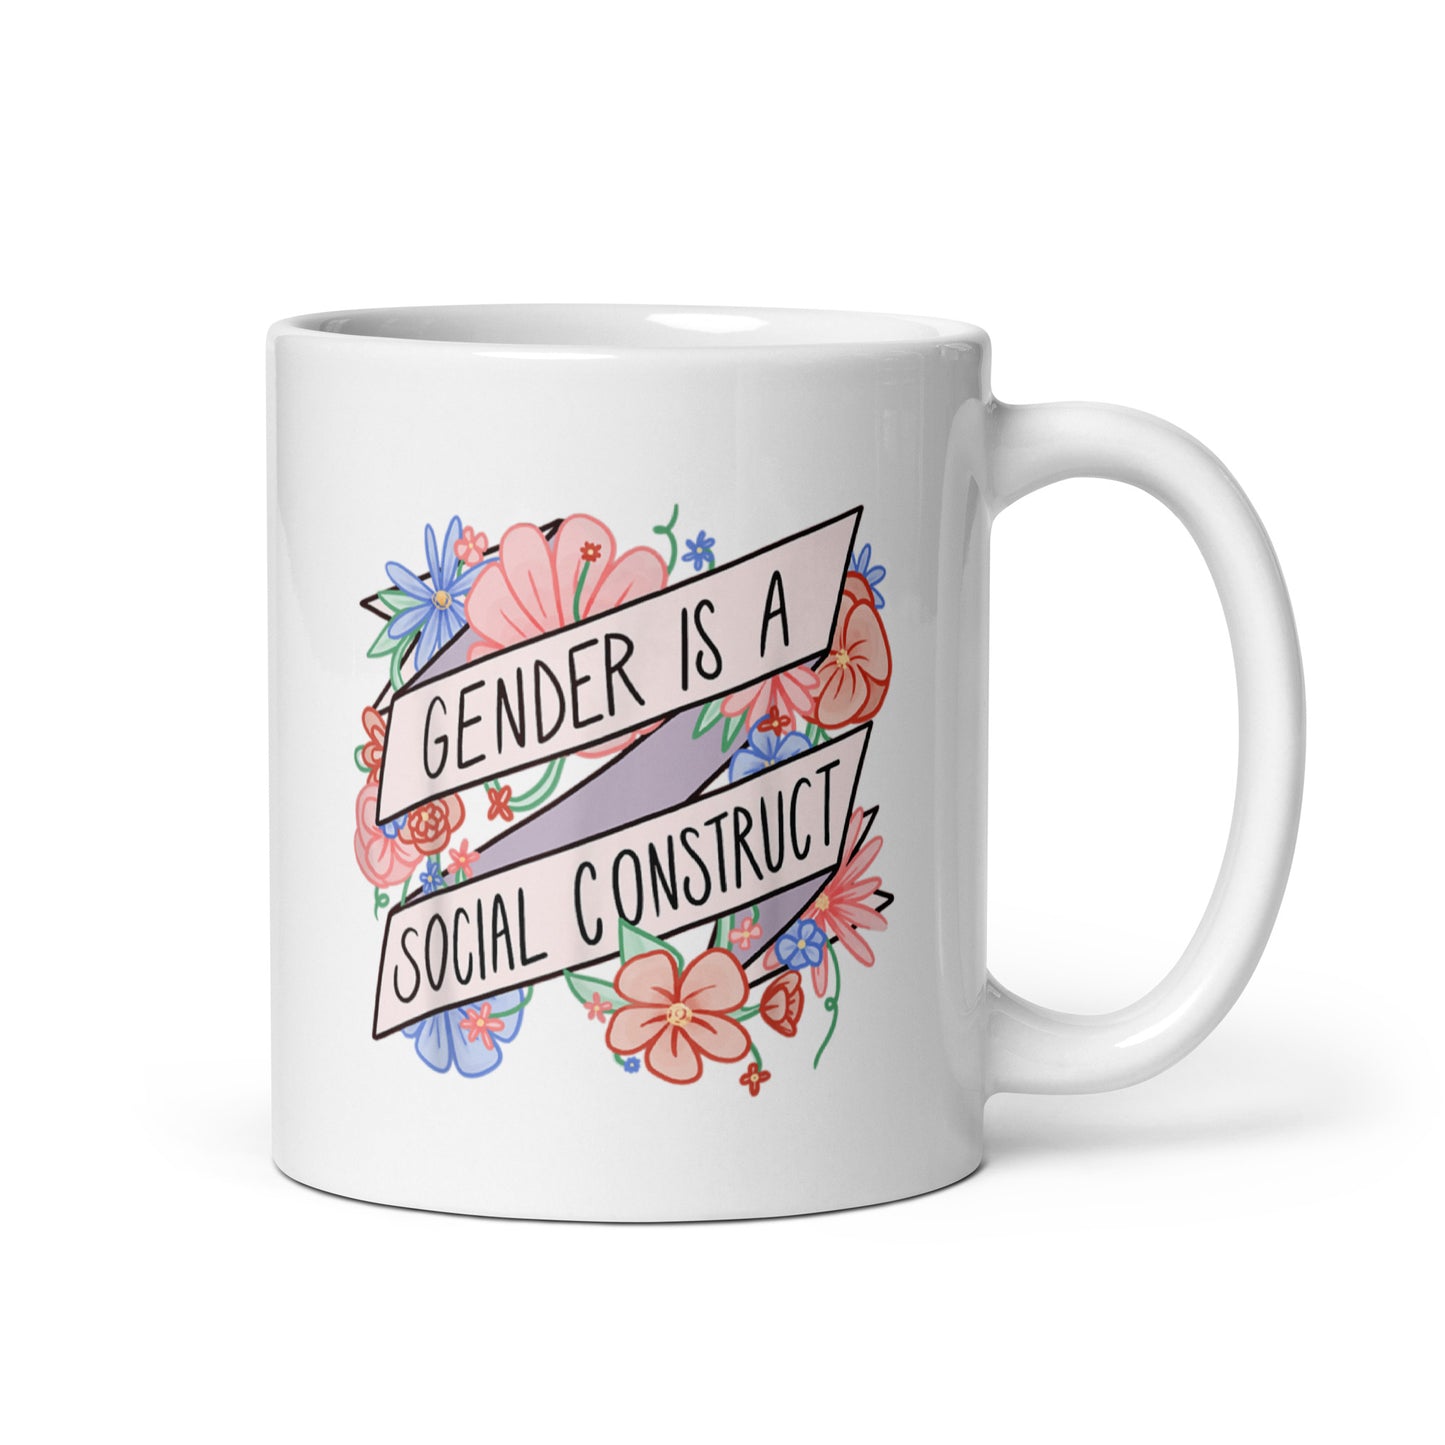 Gender is Social Construct Mug